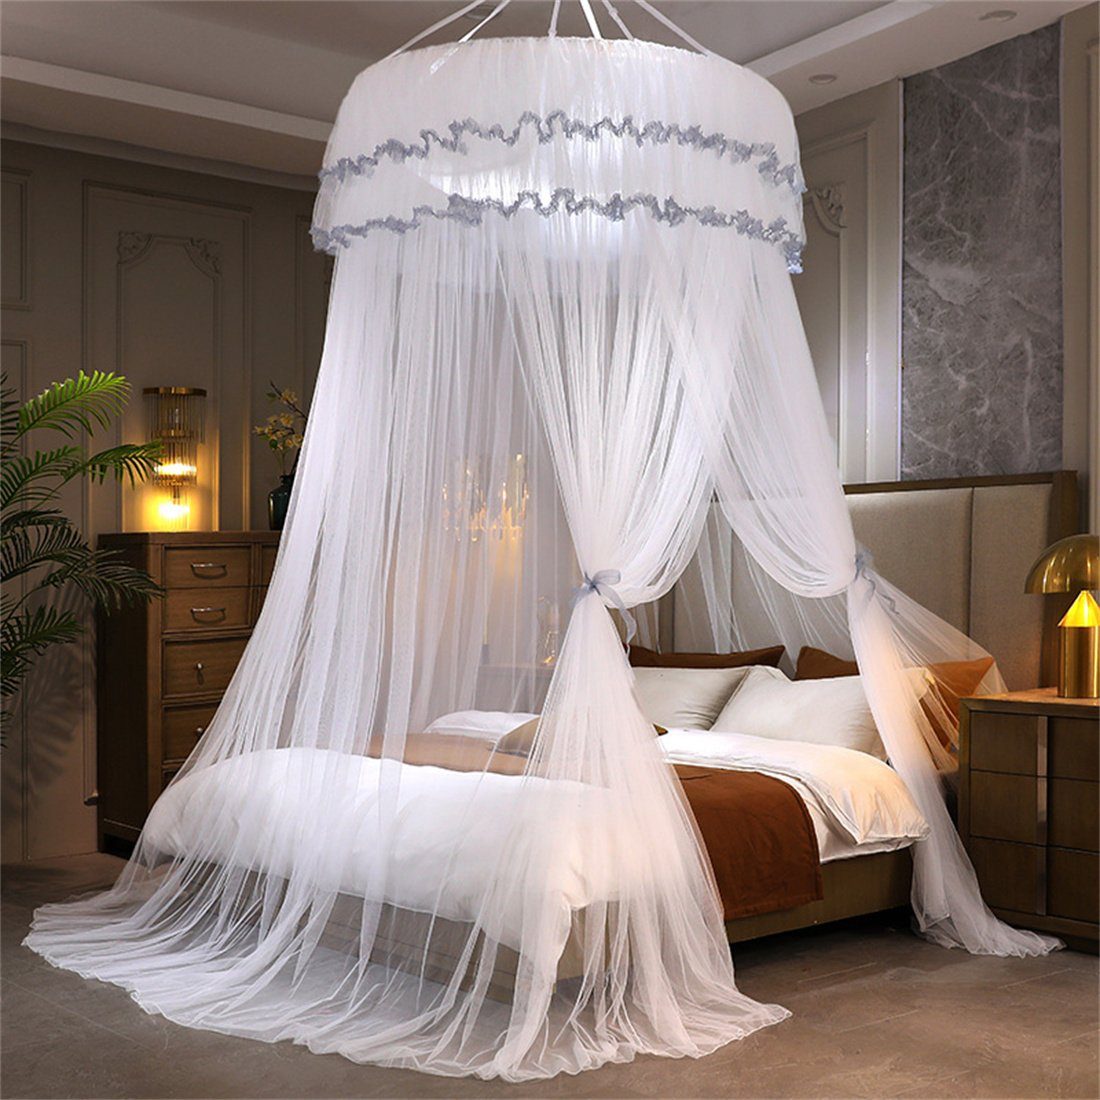 ZAXSD Betthimmel Prinzessinnenbett Kuppel-Decken-Moskitonetz mit raumhohem Bettvorhang Weiß